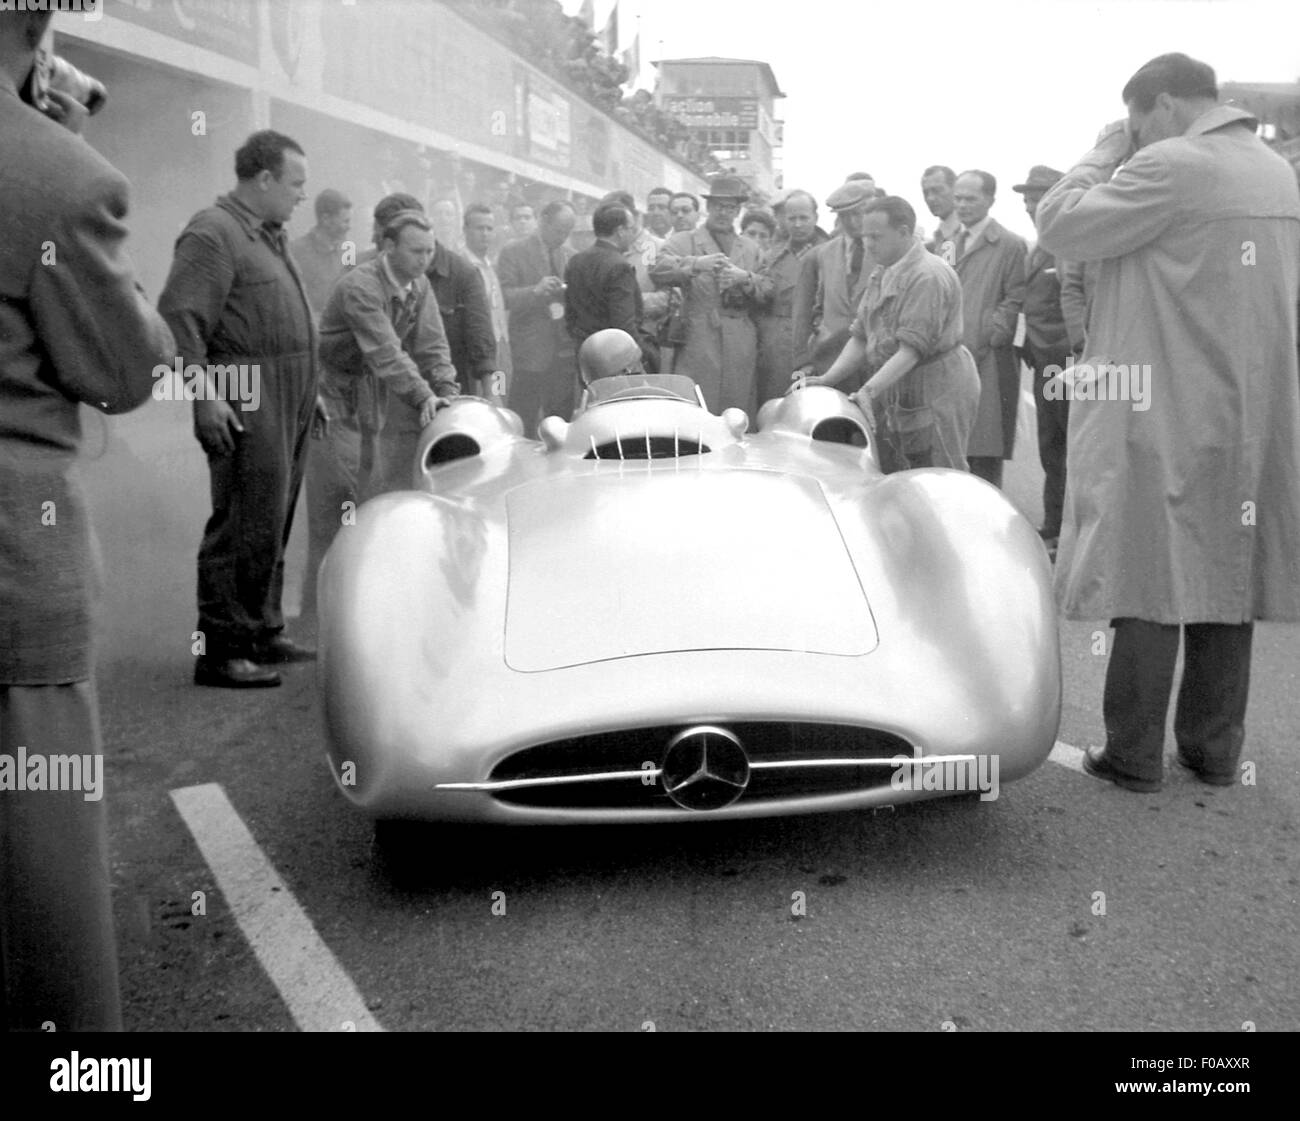 French GP in Reims 1954 KLING UN-NUMBERED MERCEDES STROMLINIENWAGEN Stock Photo